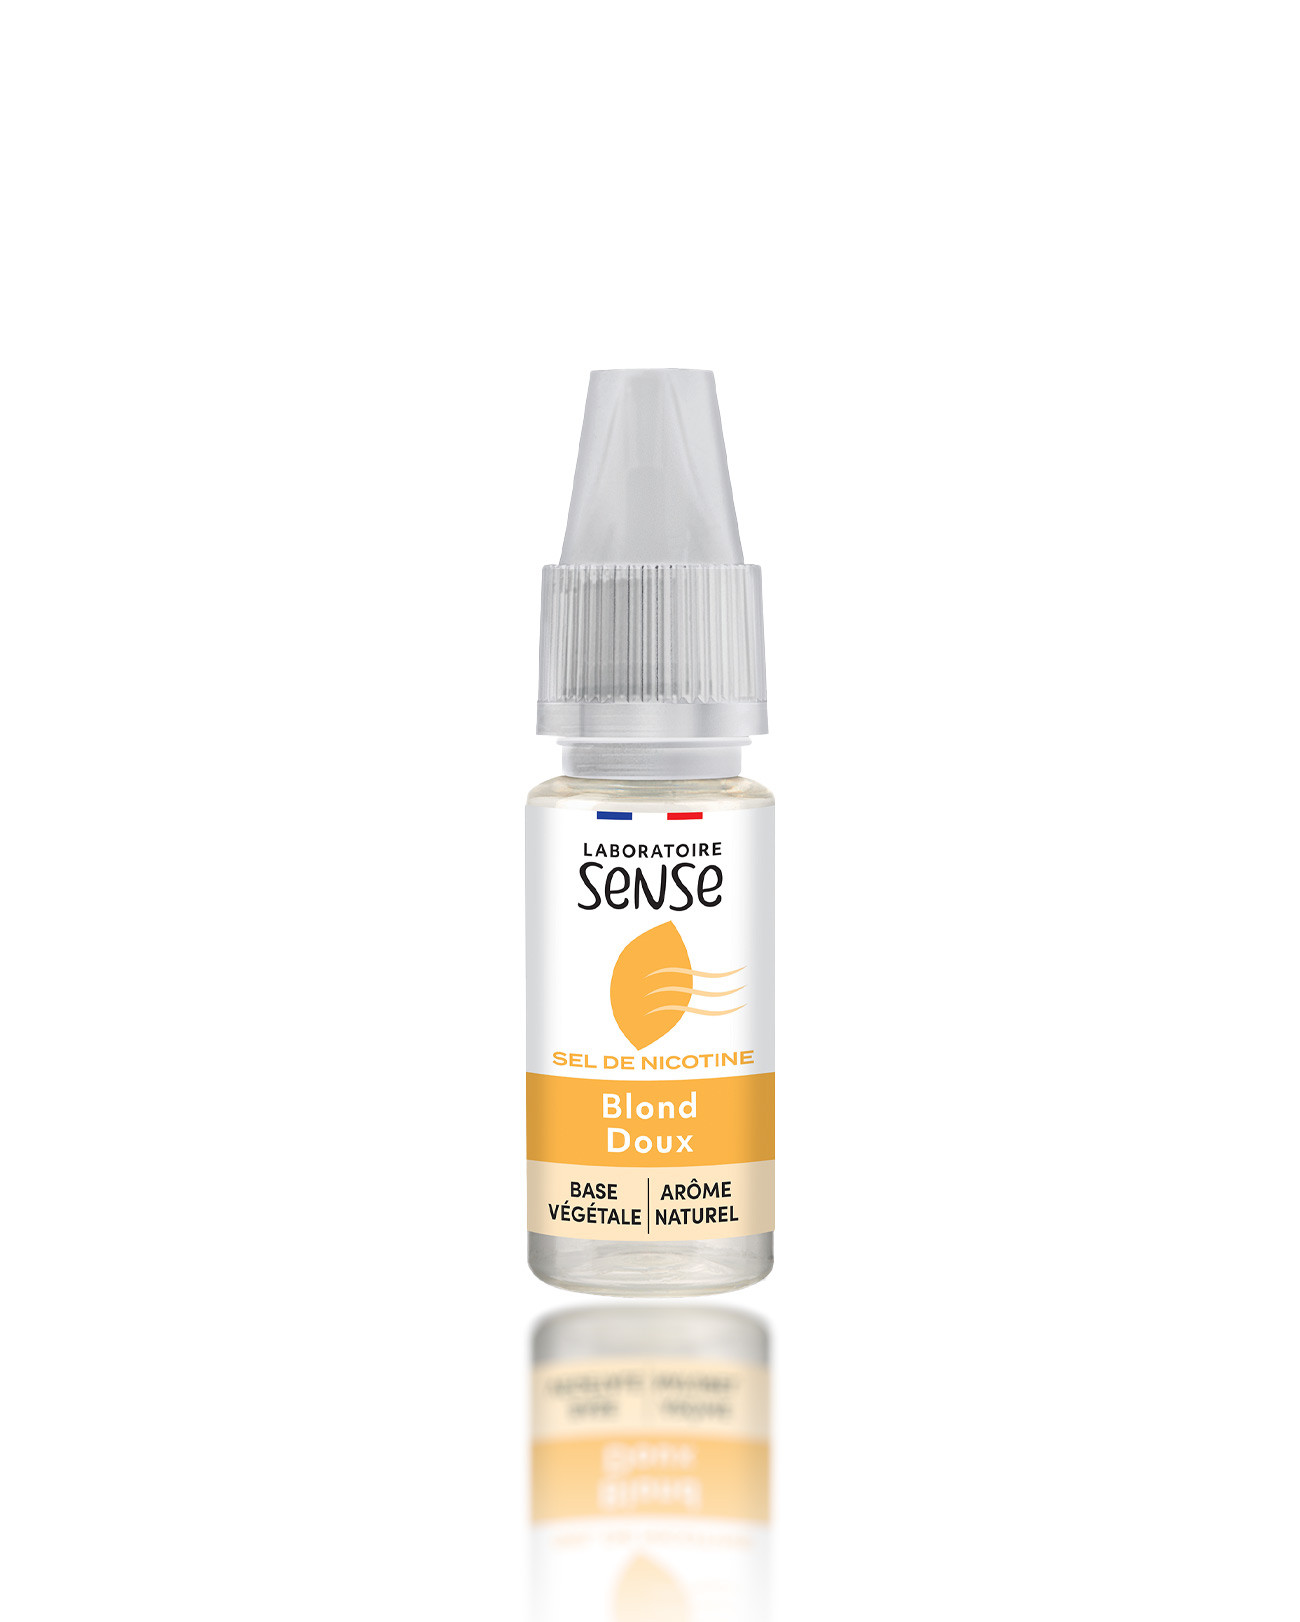 E-liquide Laboratoire Sense 10 ml aux sels de nicotine pour cigarette électronique parfum tabac blond doux nouveau packaging